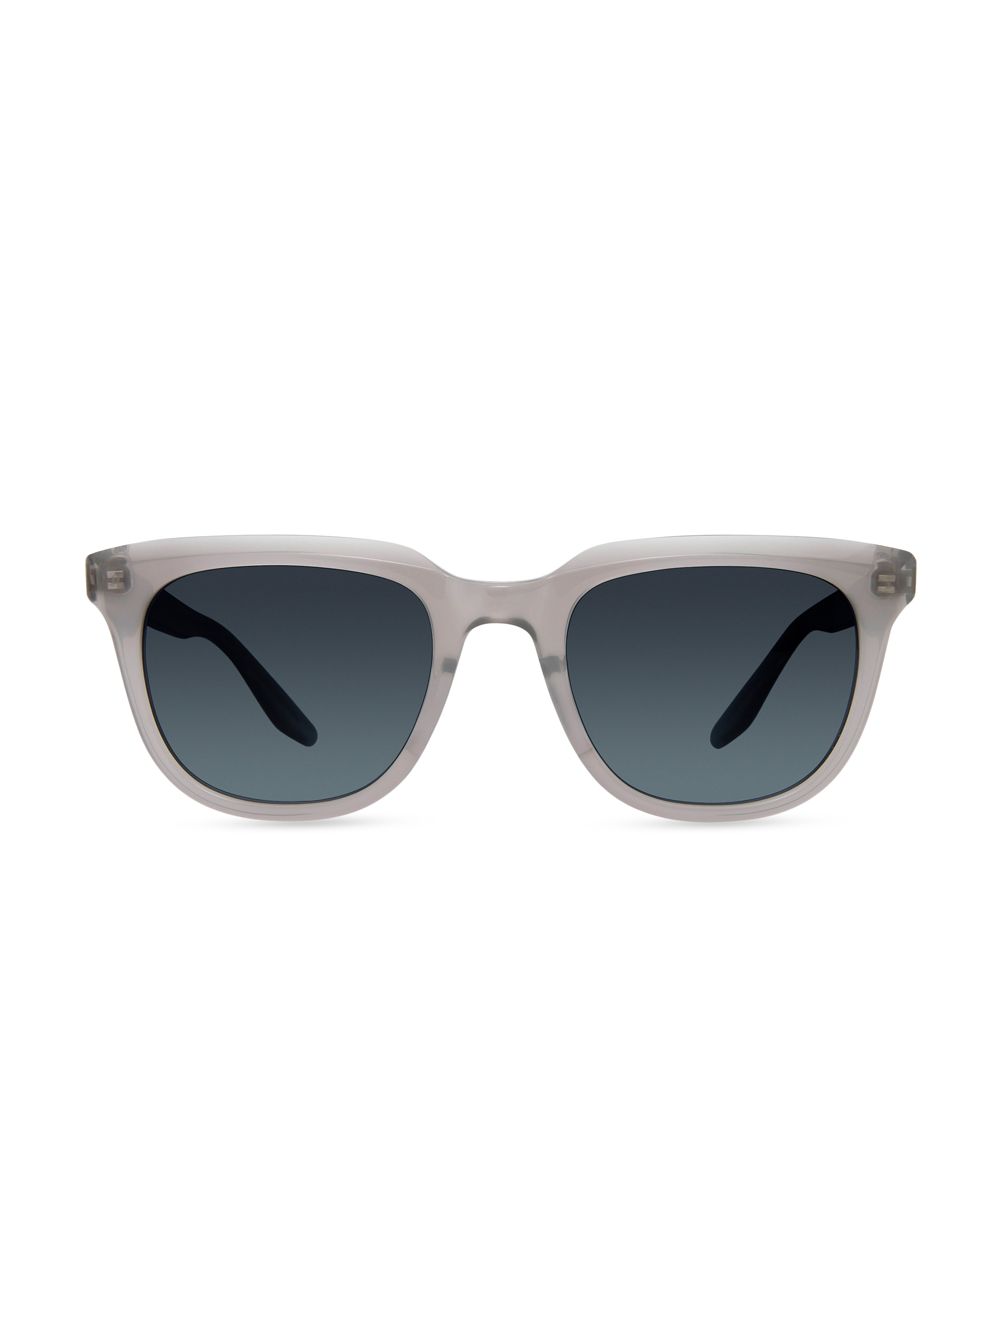 Прямоугольные солнцезащитные очки Bogle 55 мм Barton Perreira, серый